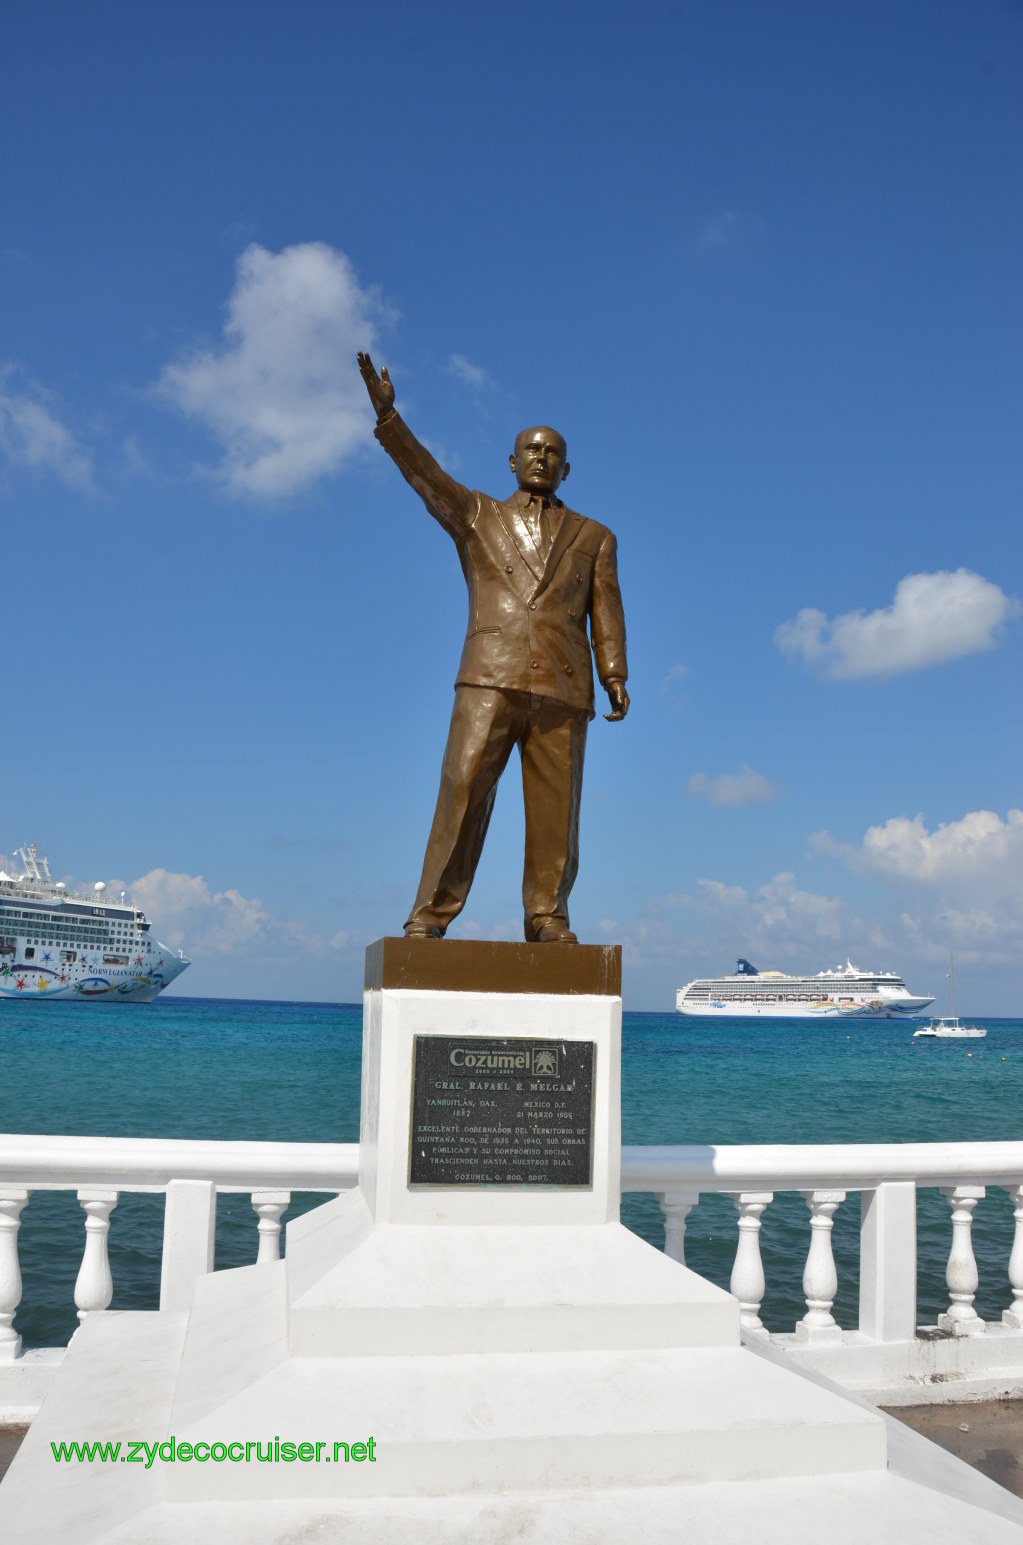 062: Carnival Conquest, Nov 18. 2011, Cozumel, Rafael E. Melgar statue